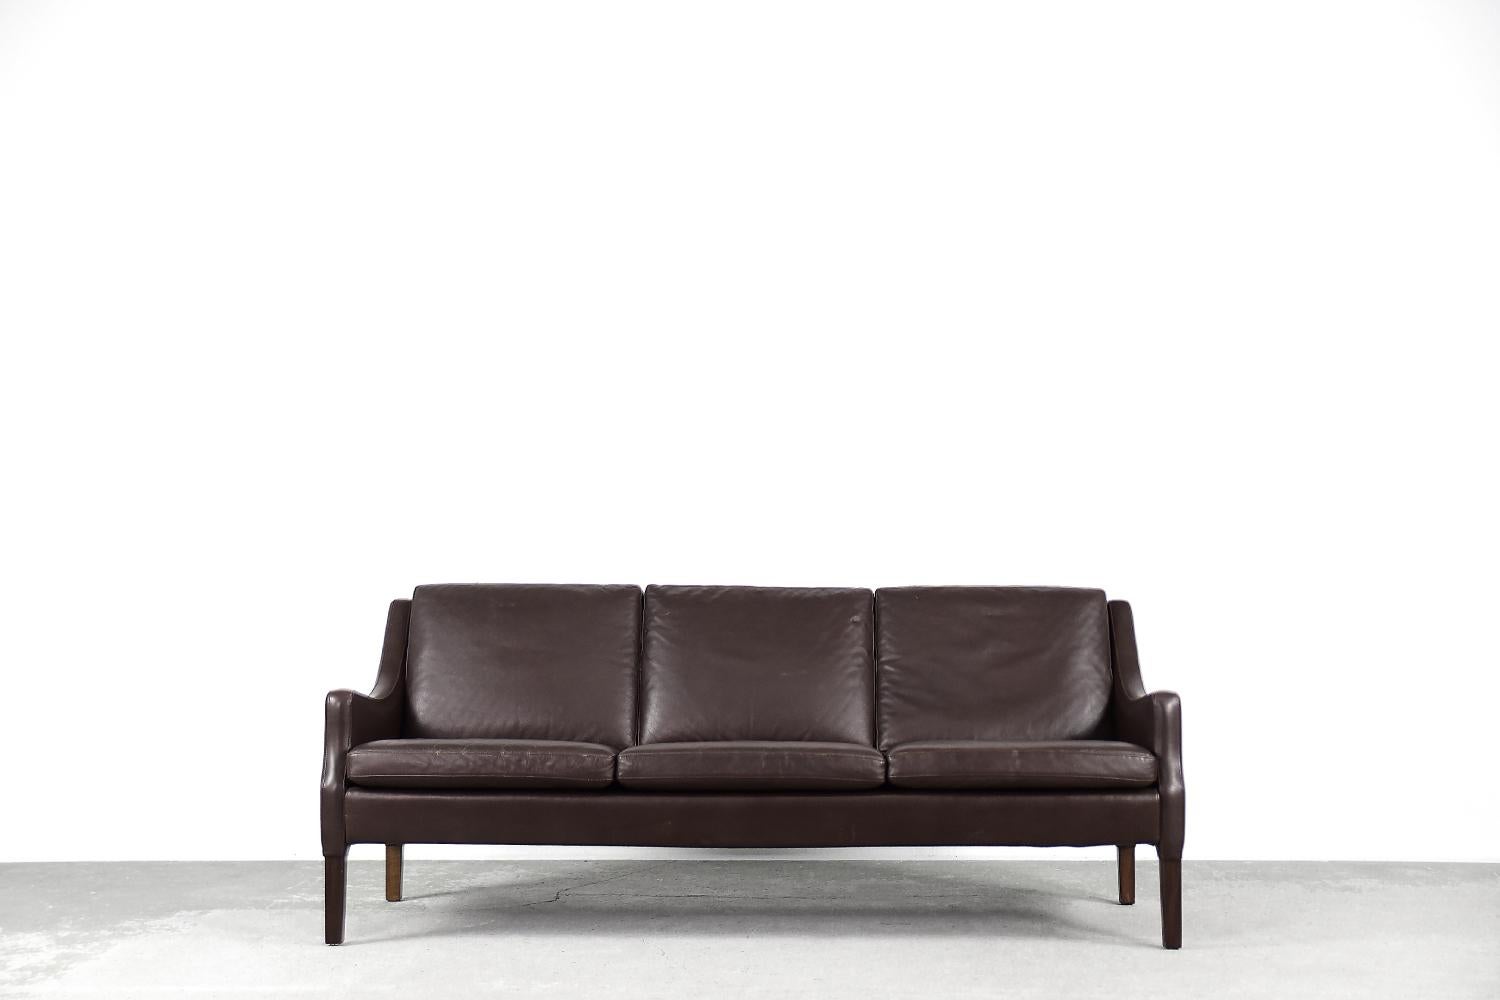 Ce canapé à trois places a été fabriqué au Danemark dans les années 1960. Le canapé est entièrement recouvert de cuir naturel d'une couleur chocolat foncé profond. Des coussins confortables et lâchement placés garantissent confort et commodité